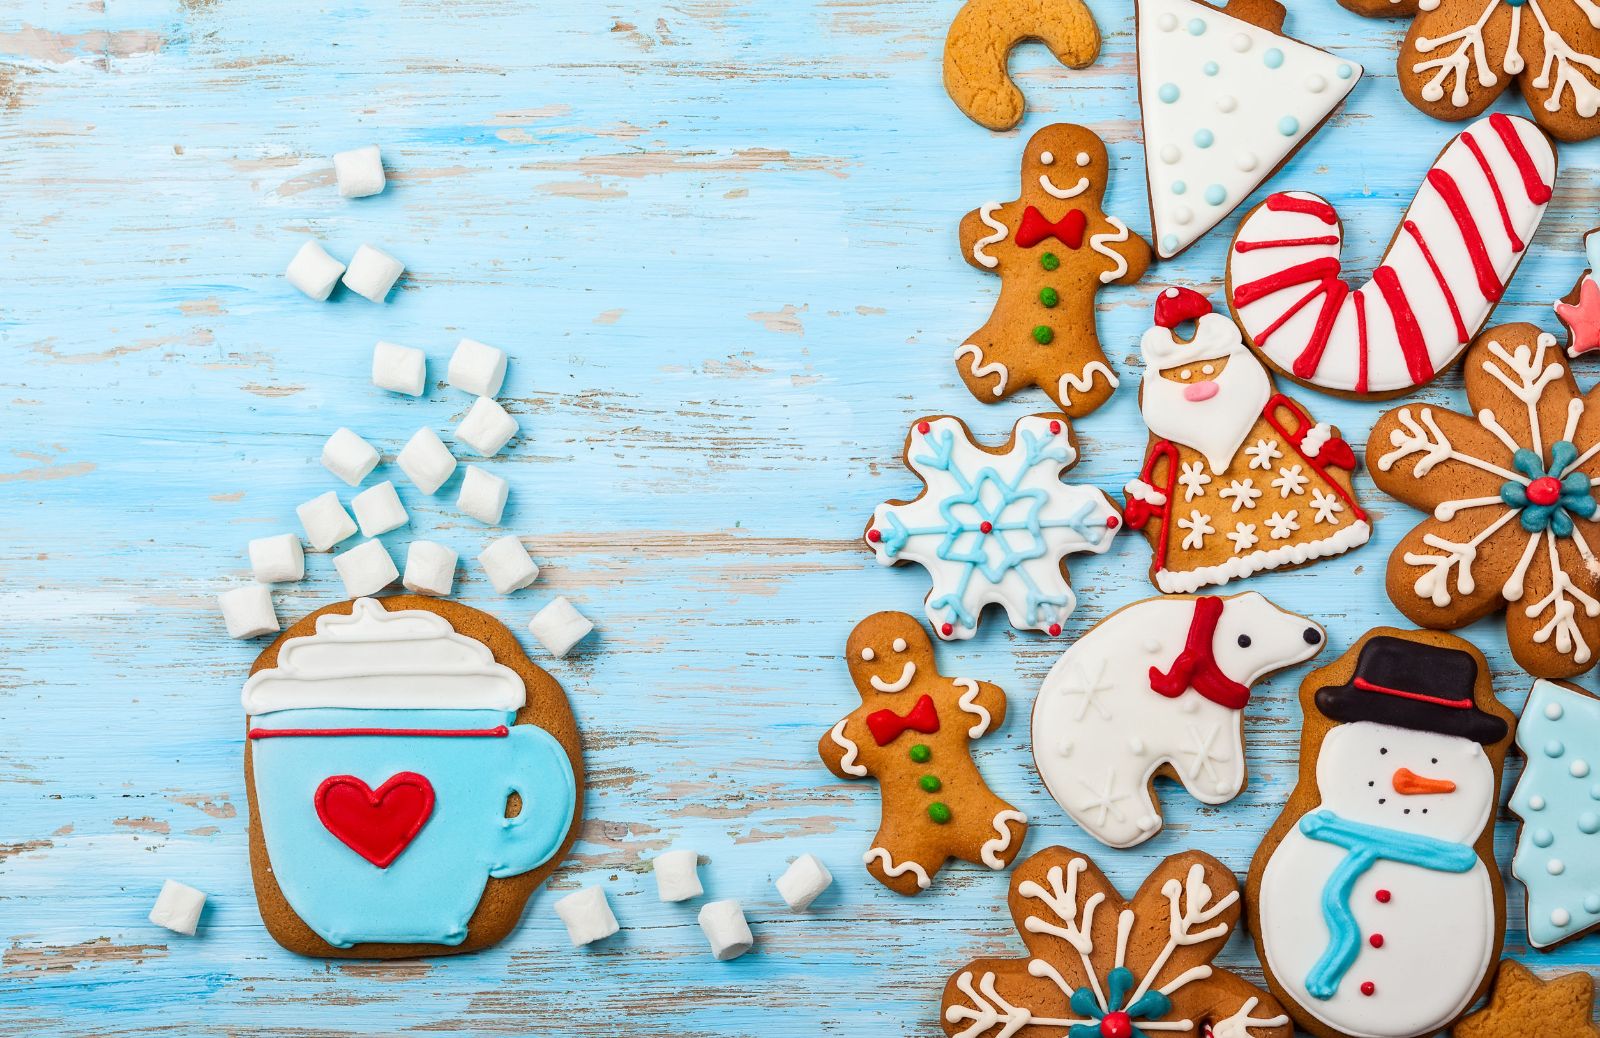 La ricetta dei biscotti di Natale decorati da regalare